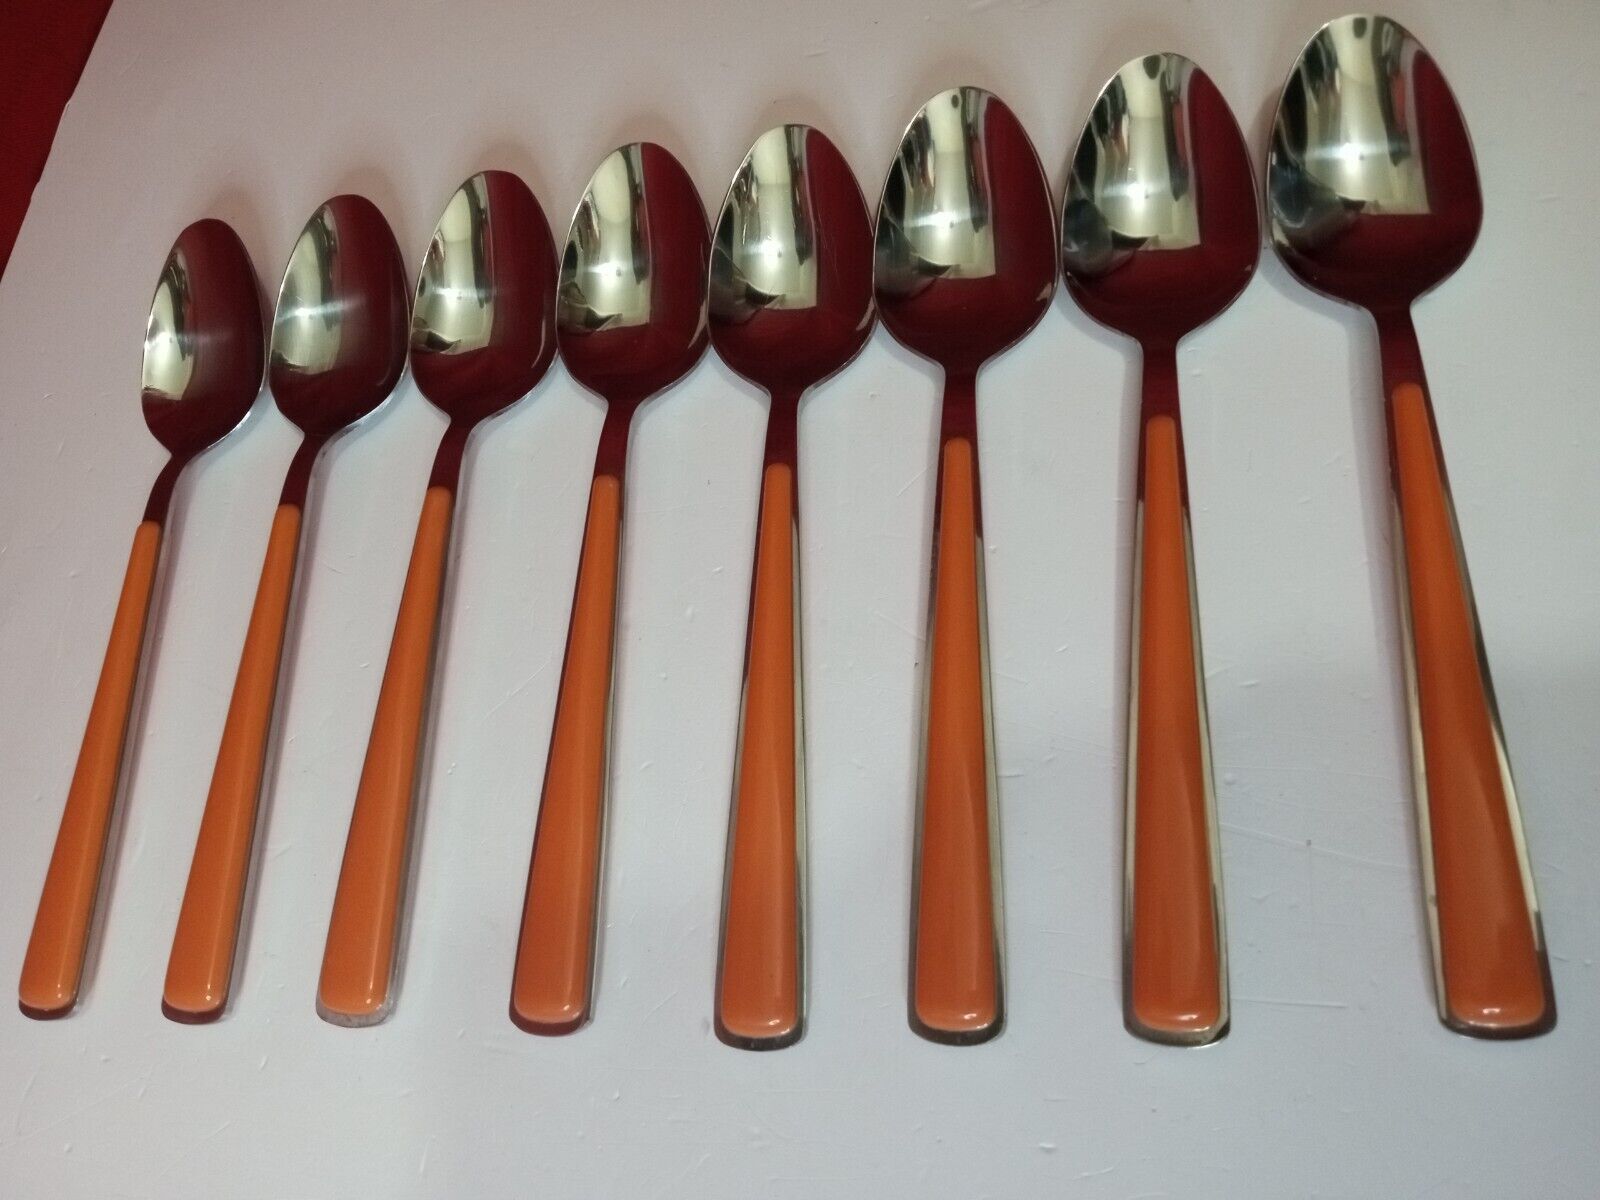 Vintage Fiestaware Merengue Tablespoon Set Stainless Steel Flatware Orange